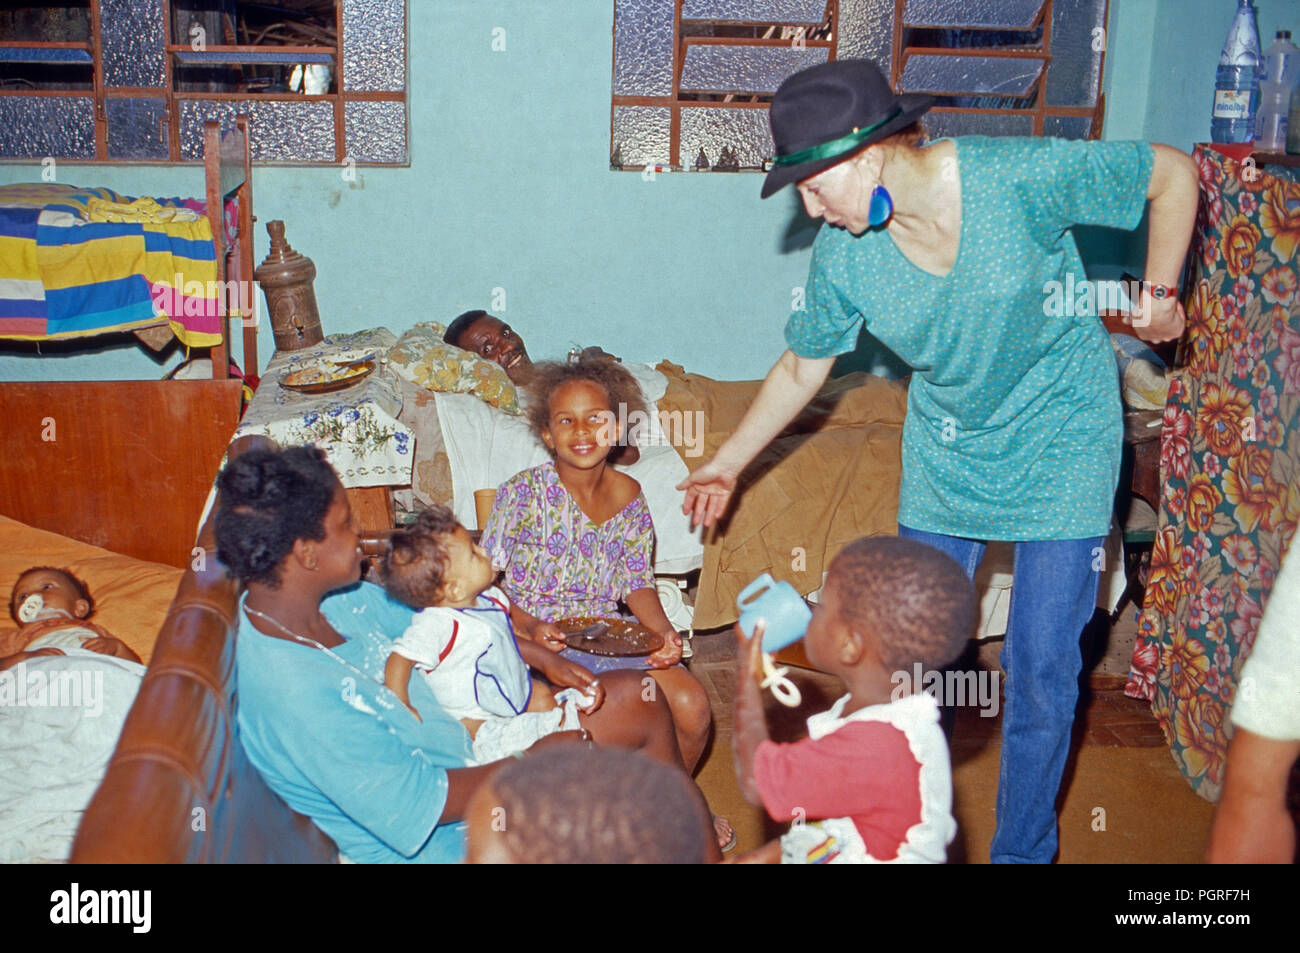 Diane Herzogin von Württemberg leistet Entwicklungshilfe in Ländern der Dritten Welt, Afrika 1980er Jahre. Diane Duchessa di Wurttemberg lavorando in aiuti stranieri nei paesi del Terzo Mondo, l'Africa degli anni ottanta. Foto Stock